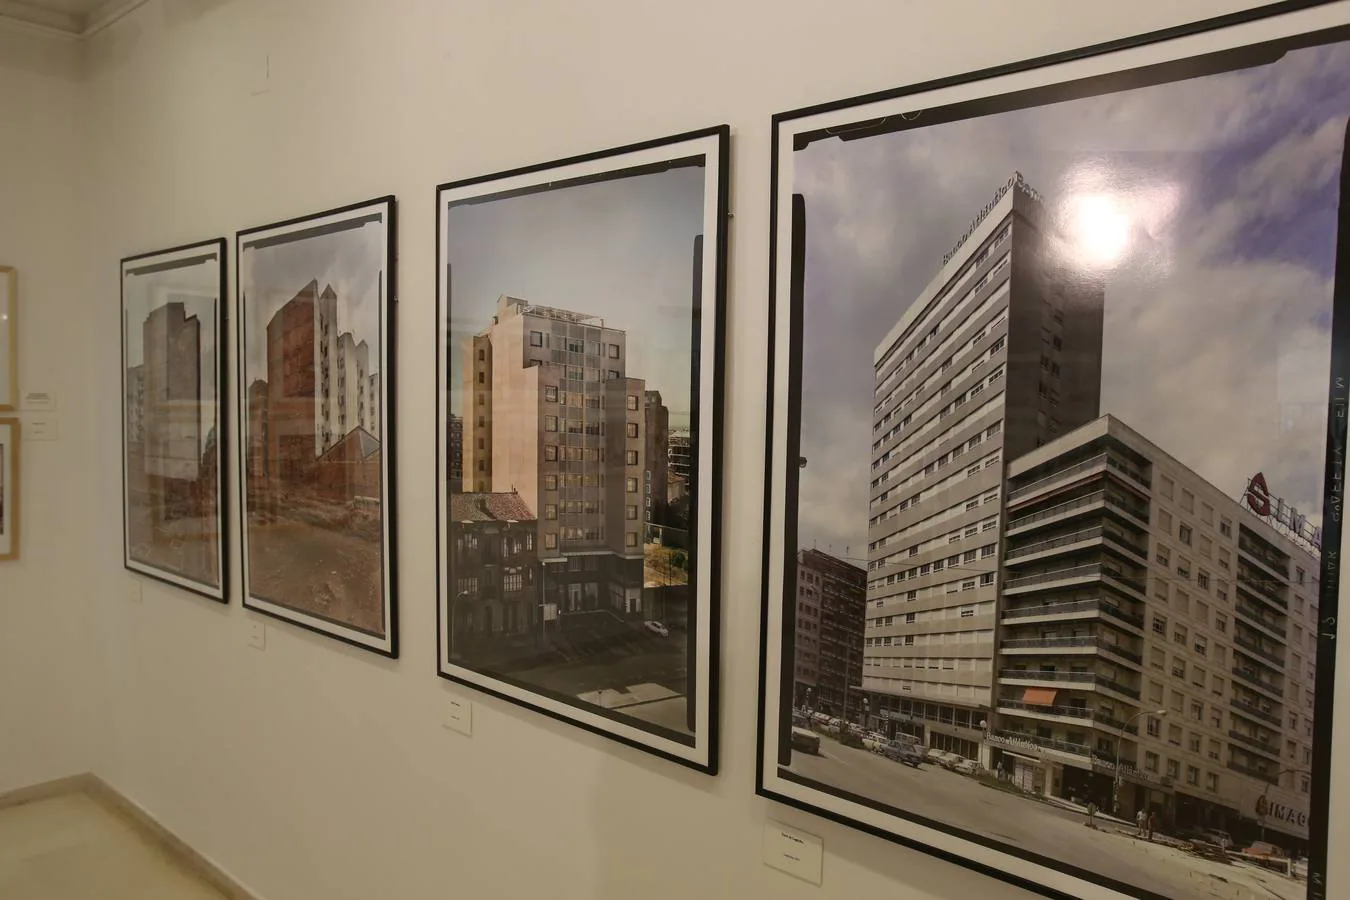 La muestra está ligada a la colección 'Fotógrafos de Logroño', "que recupera la historia de la ciudad y de las familias logroñesas". Puede verse en sala expositiva del Ayuntamiento de Logroño